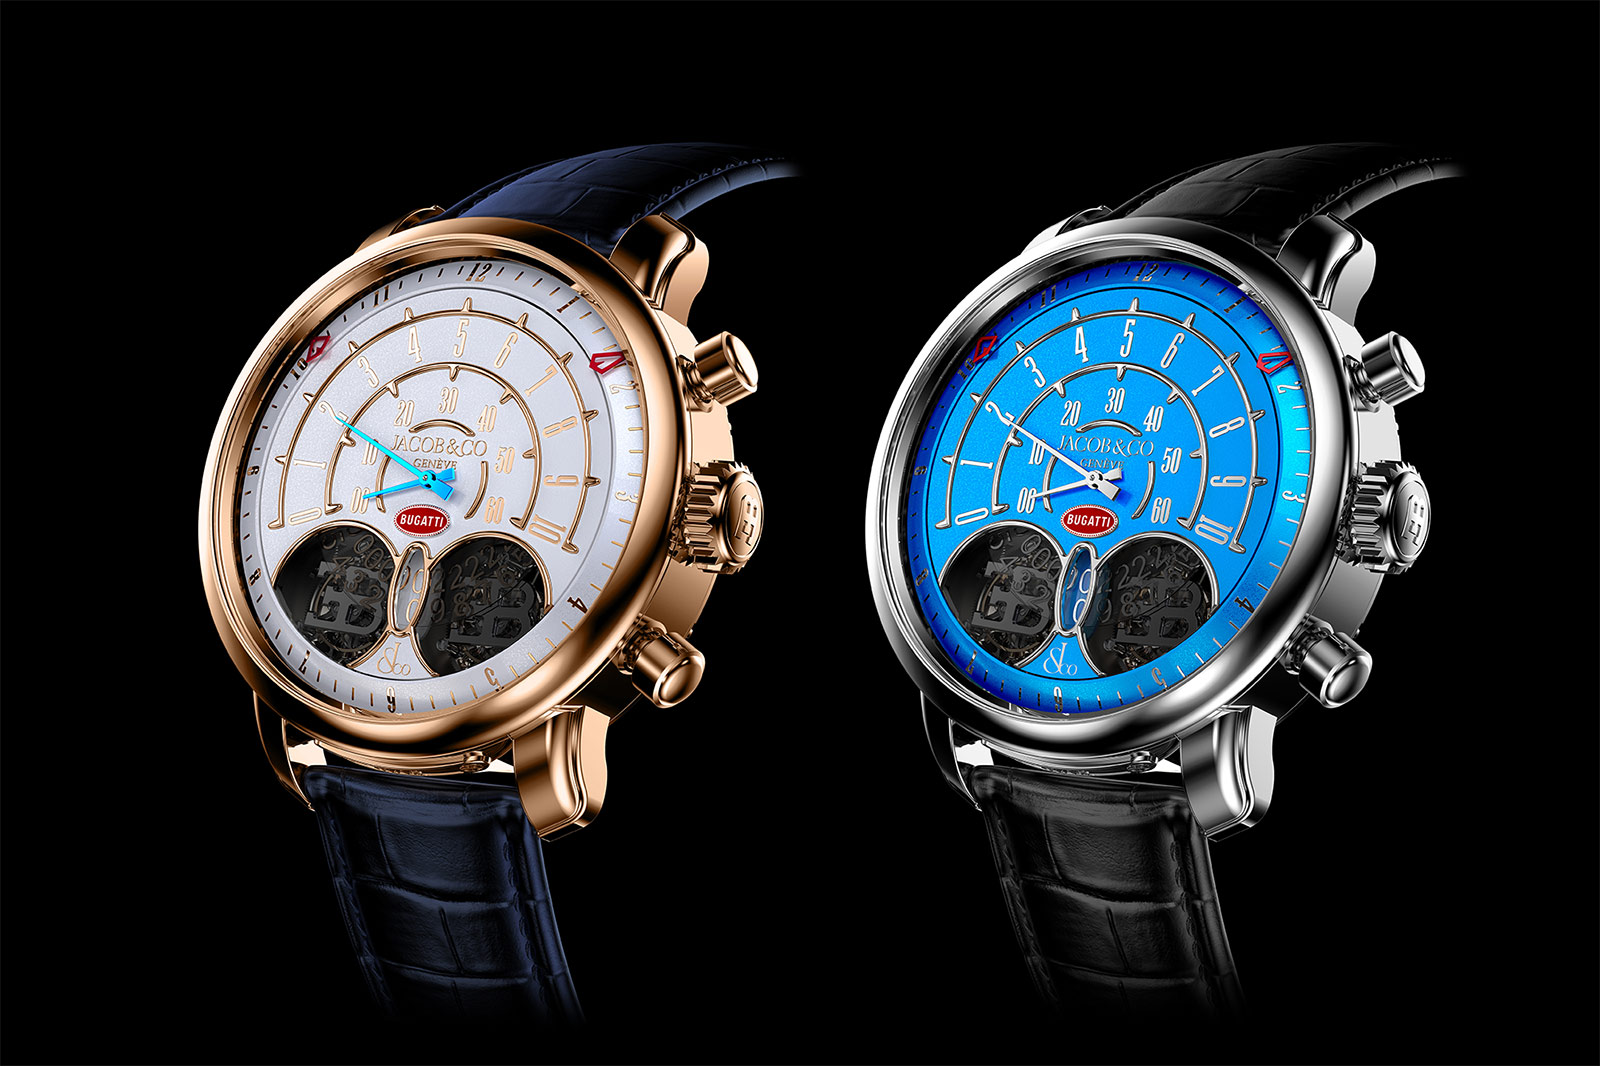 Jacob & Co. ra mắt đồng hồ mới giá 250.000 USD vinh danh huyền thoại Jean Bugatti